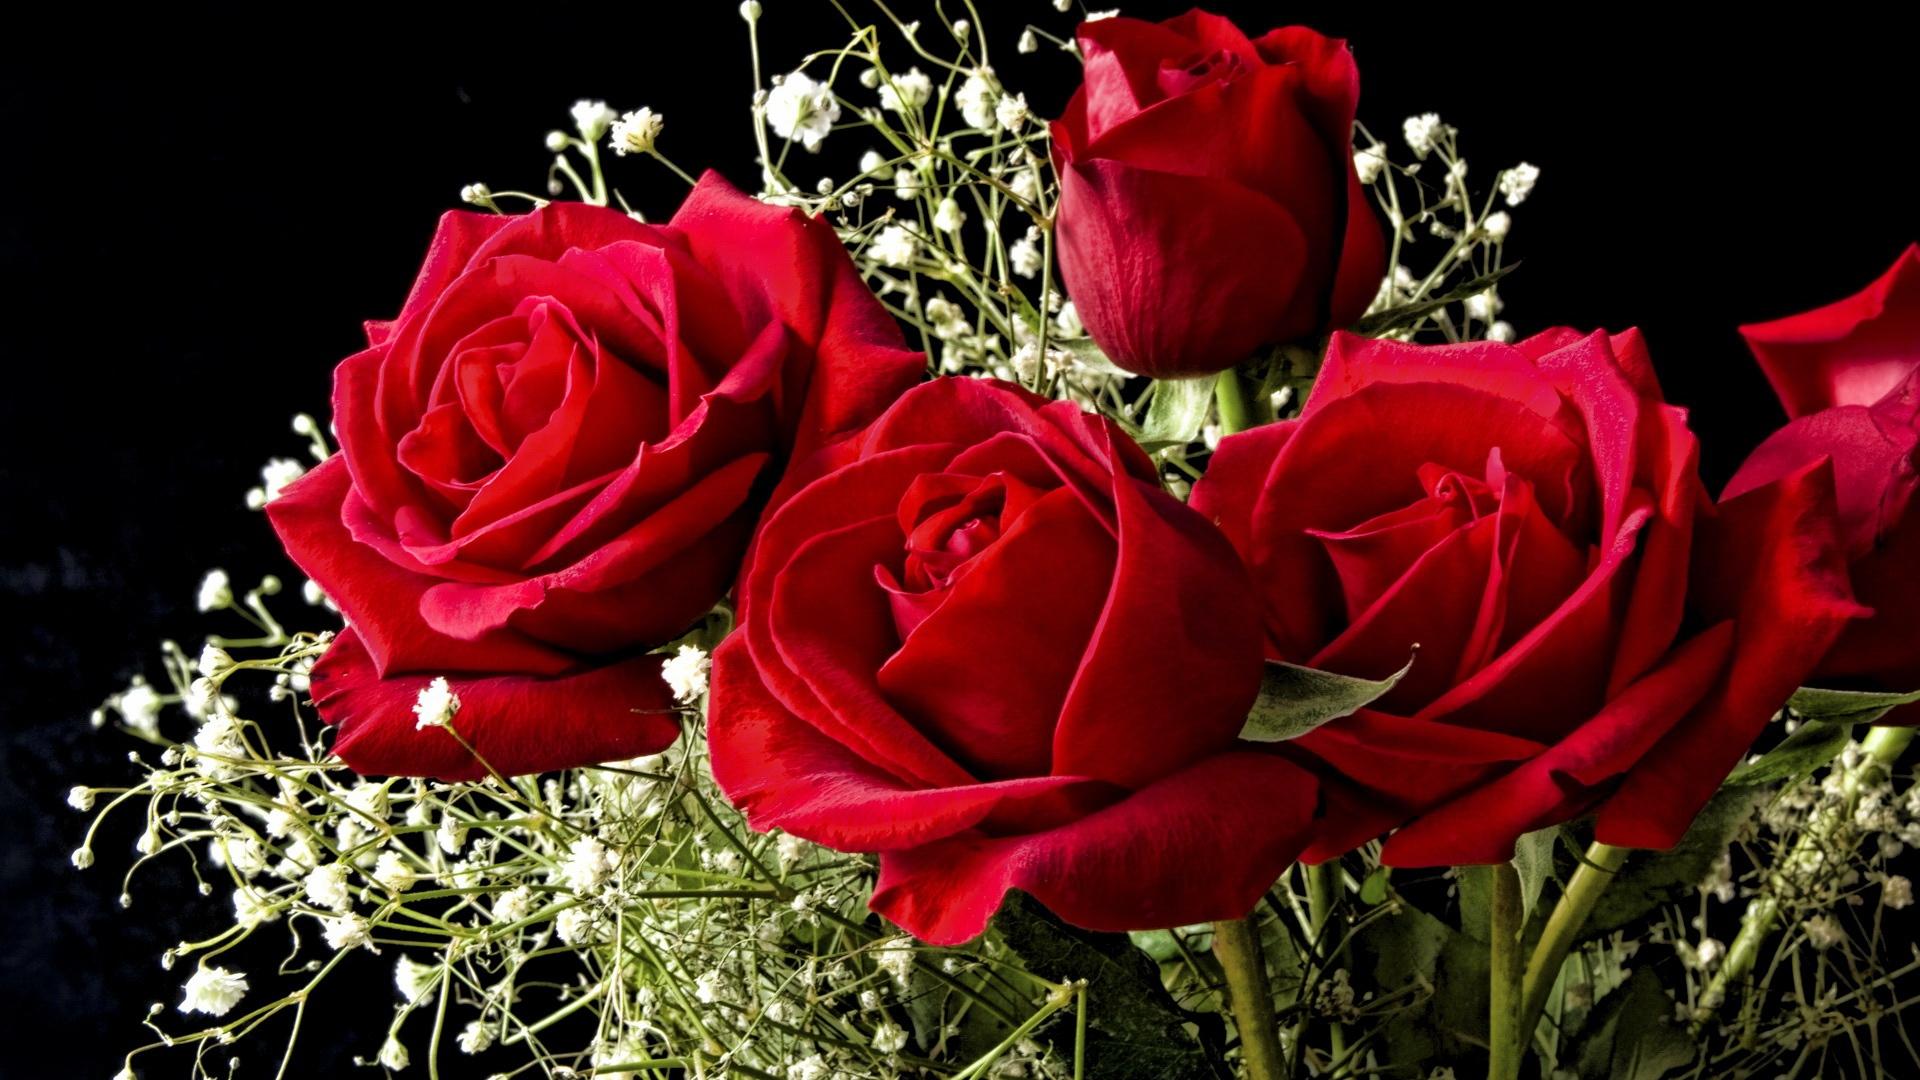 Beautiful rose flowers wallpaper for desktop